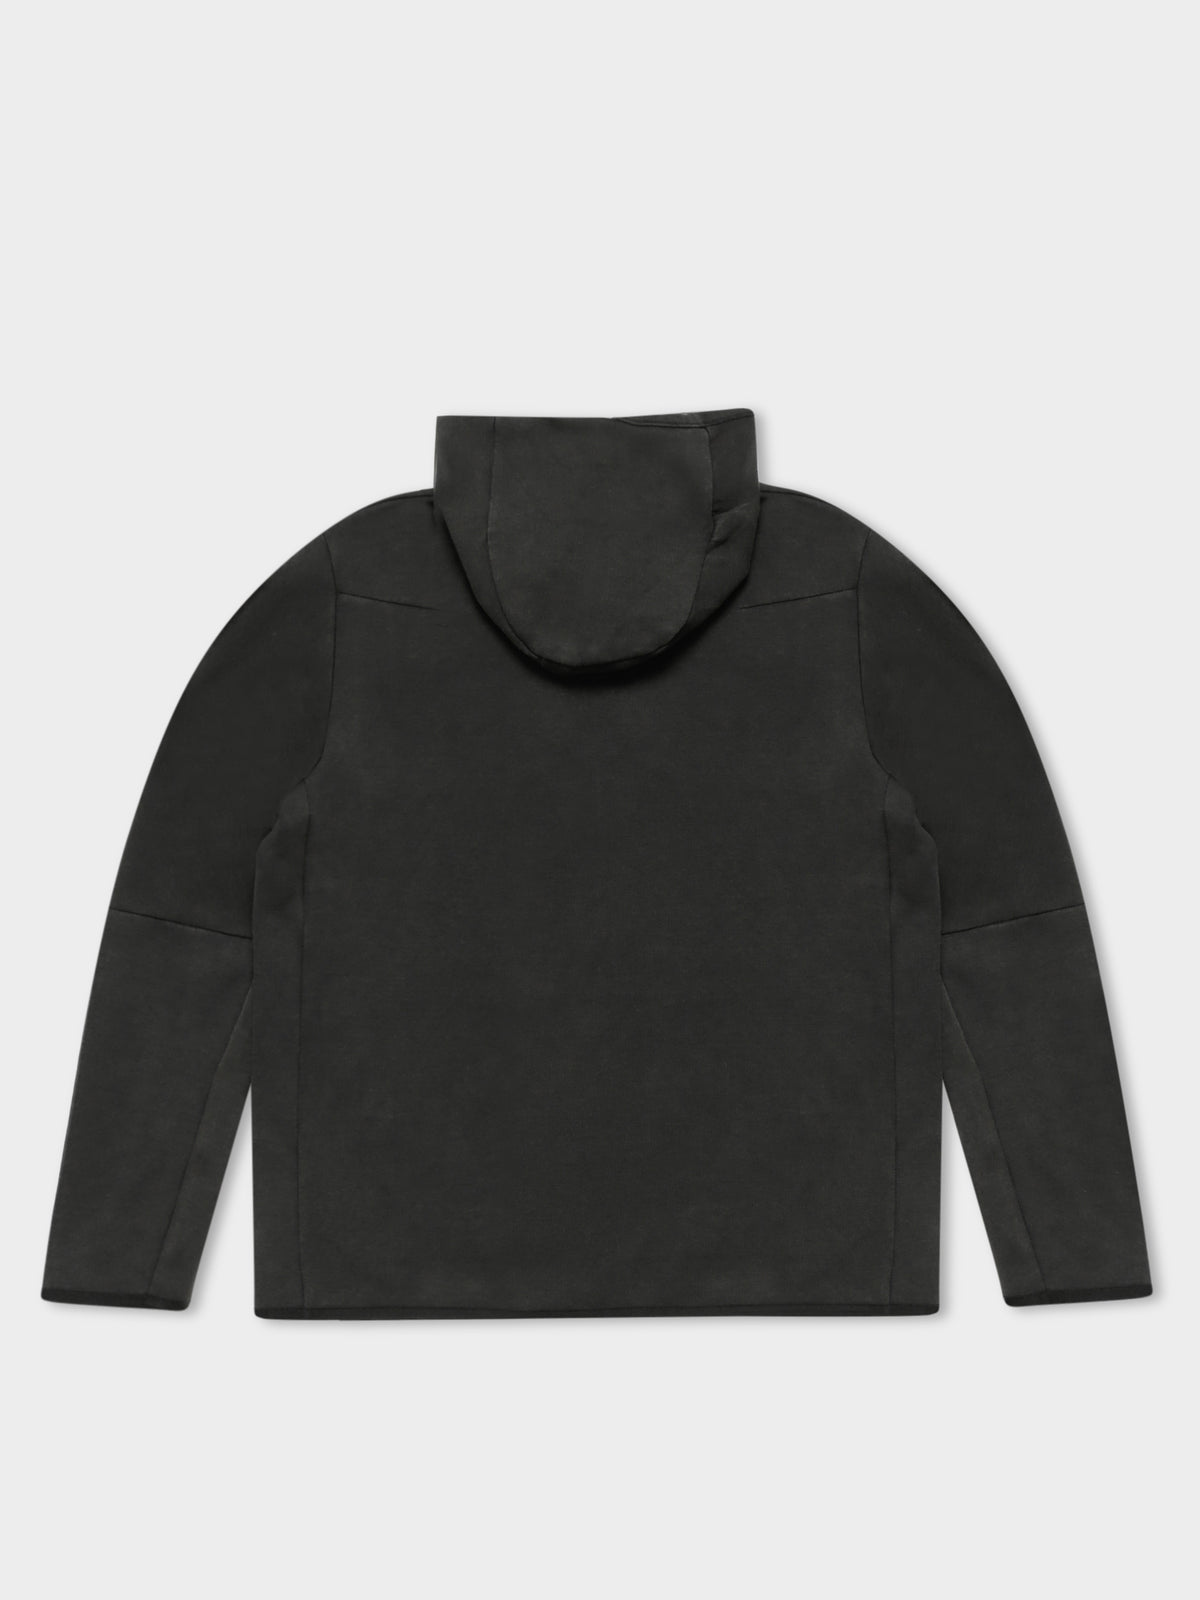 NSW Tech Fleece Jacket in Washed Black